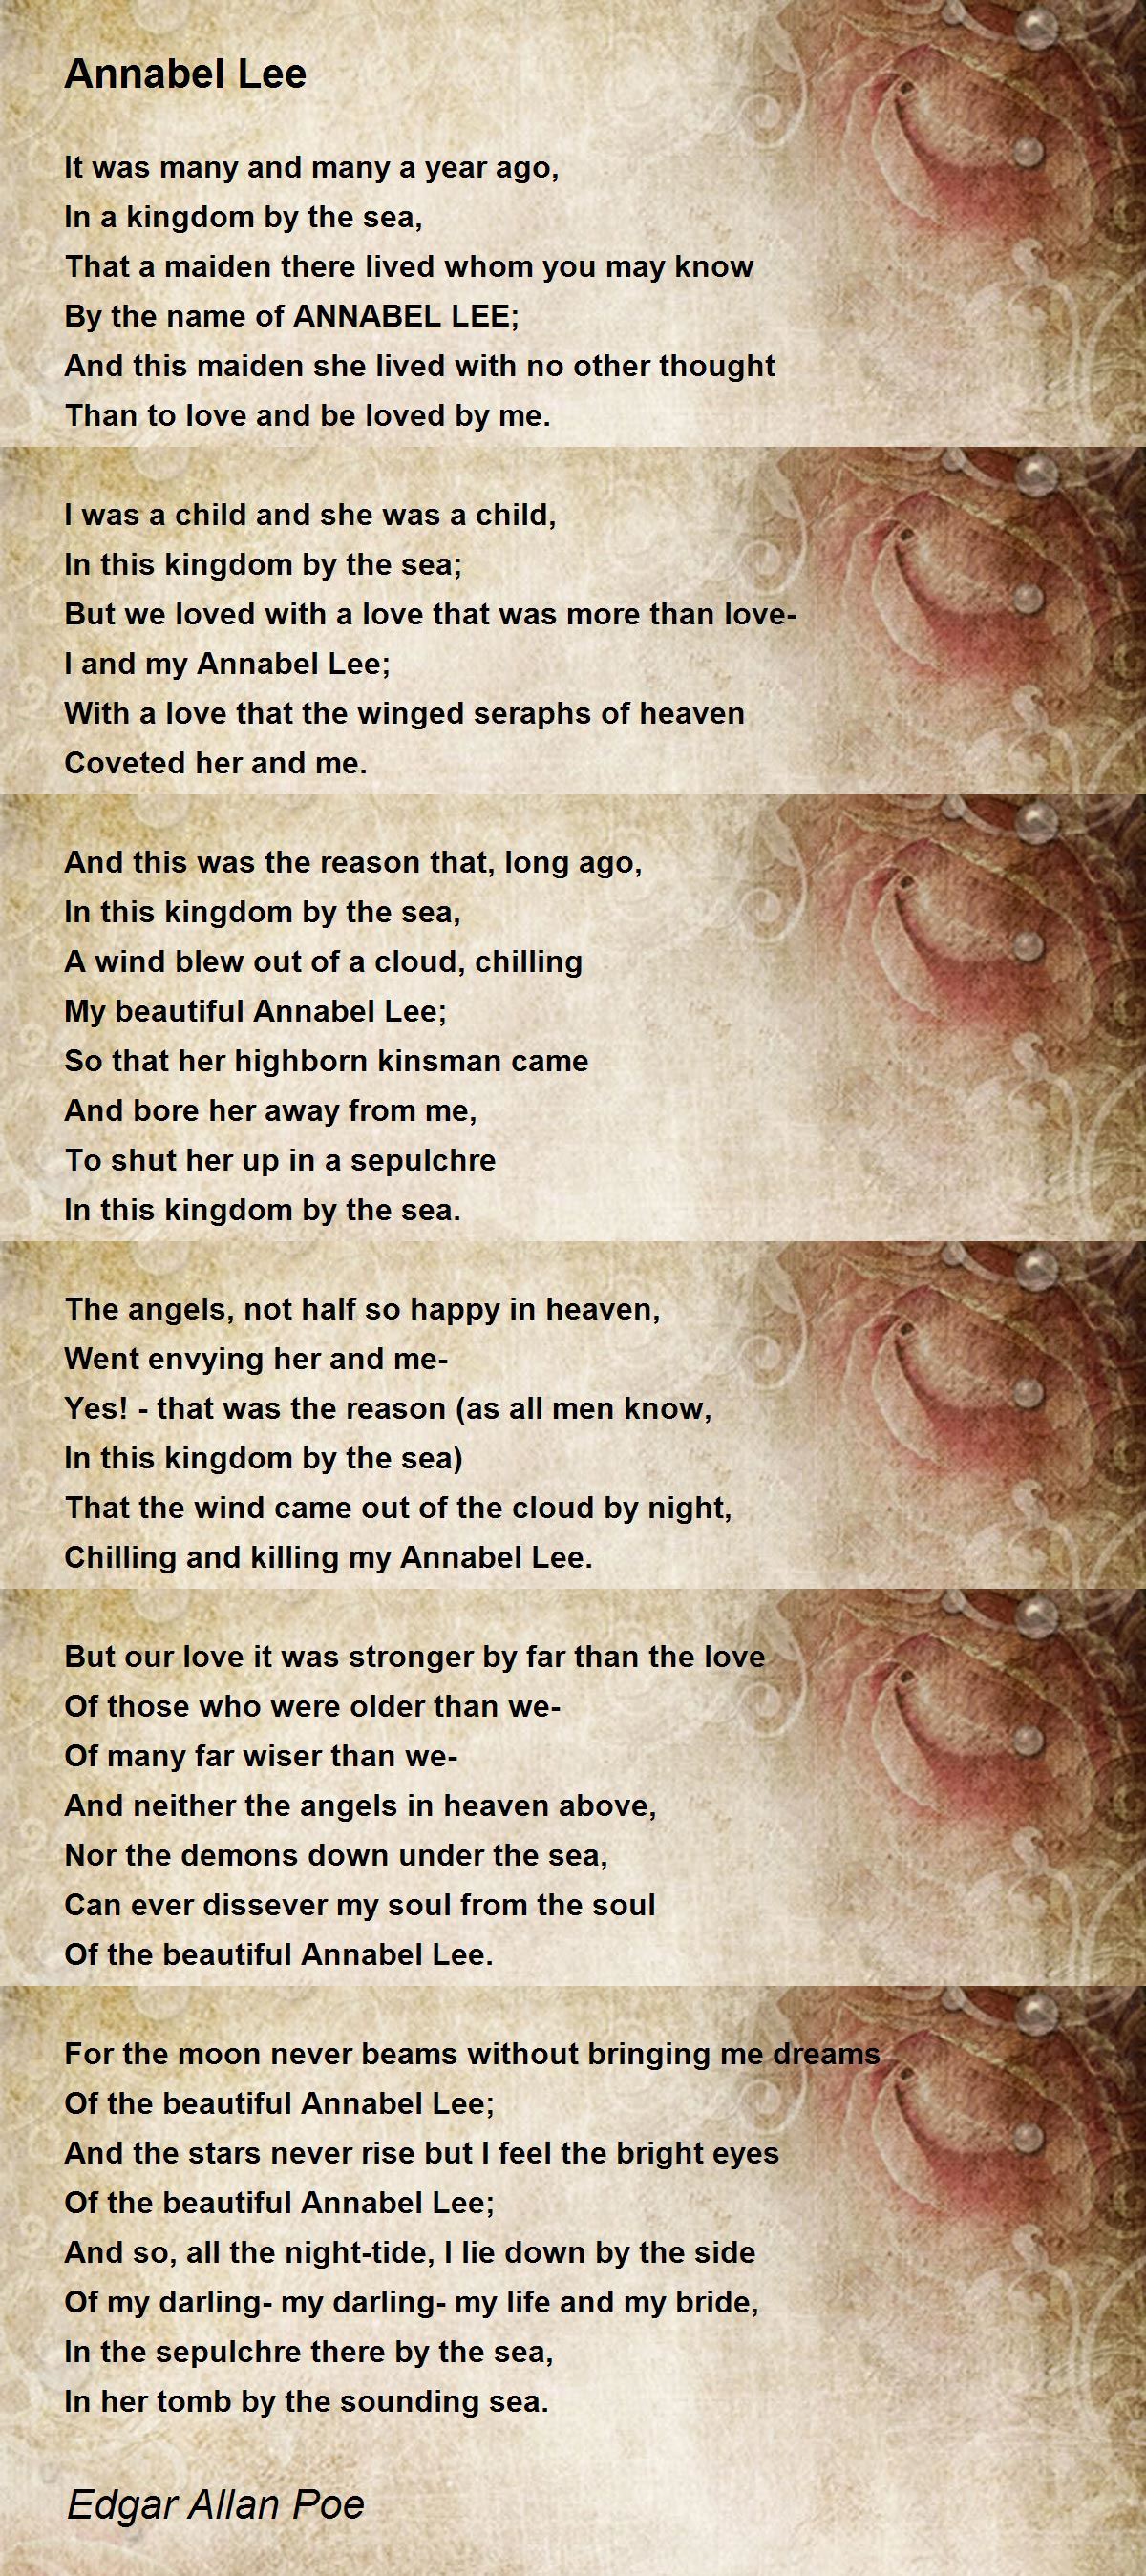 Annabel Lee - Annabel Lee Poem by Edgar Allan Poe